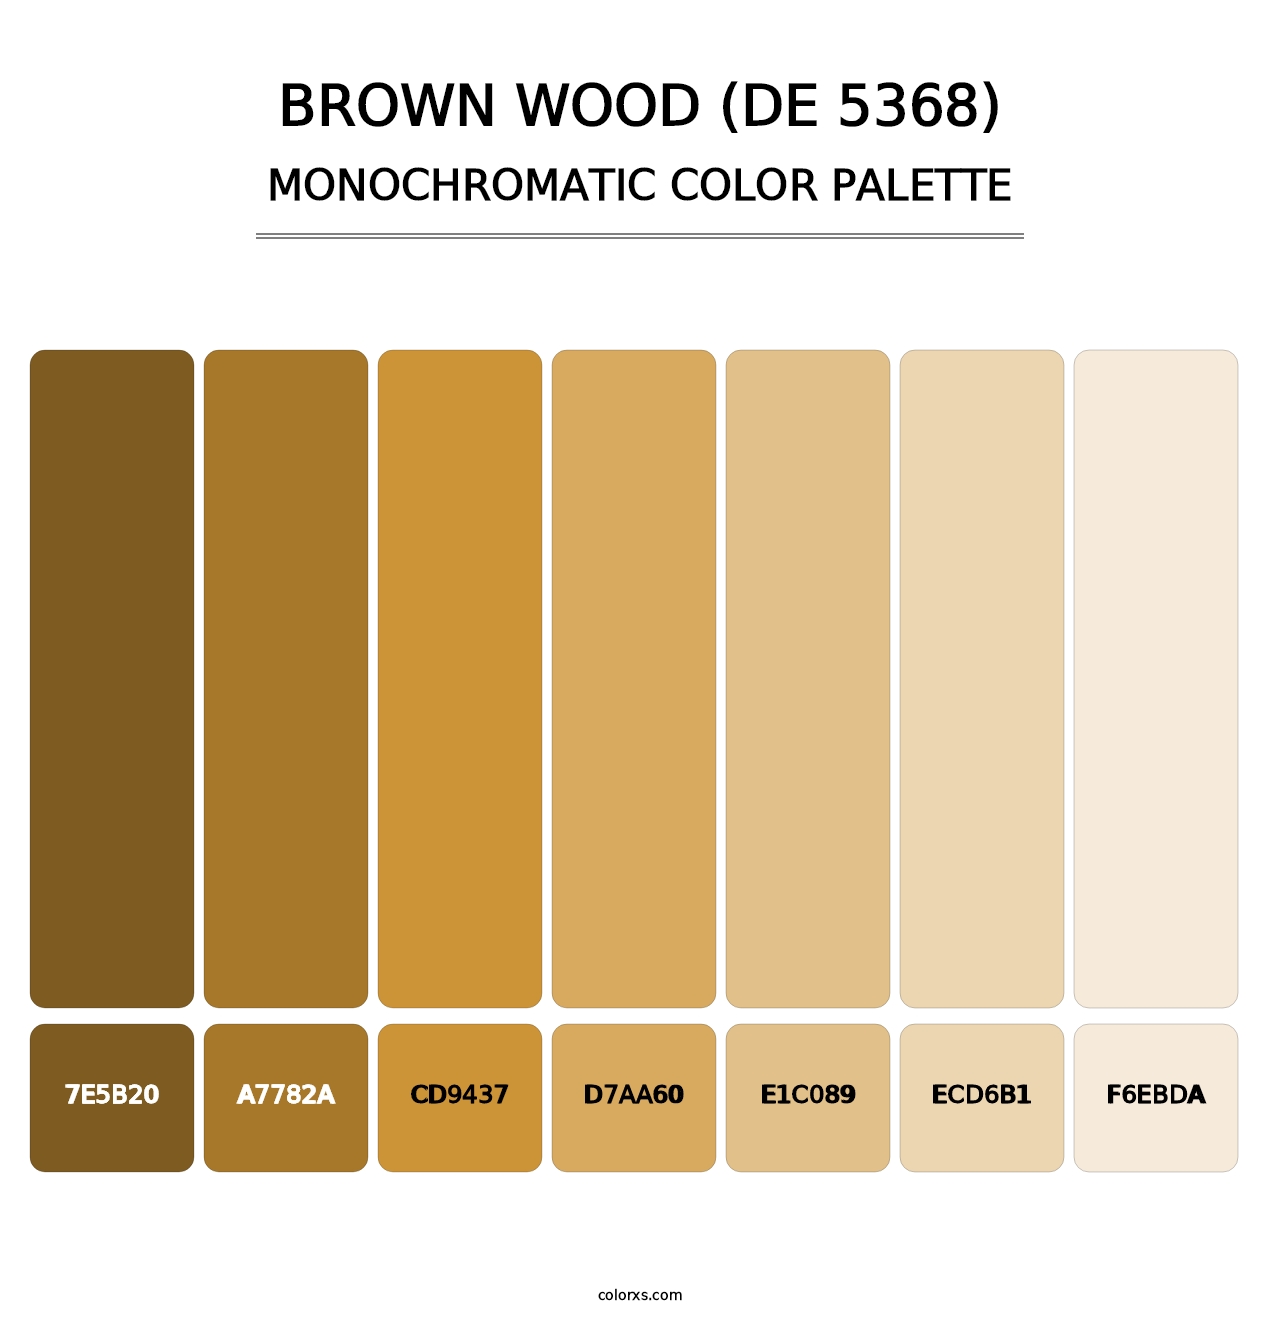 Brown Wood (DE 5368) - Monochromatic Color Palette